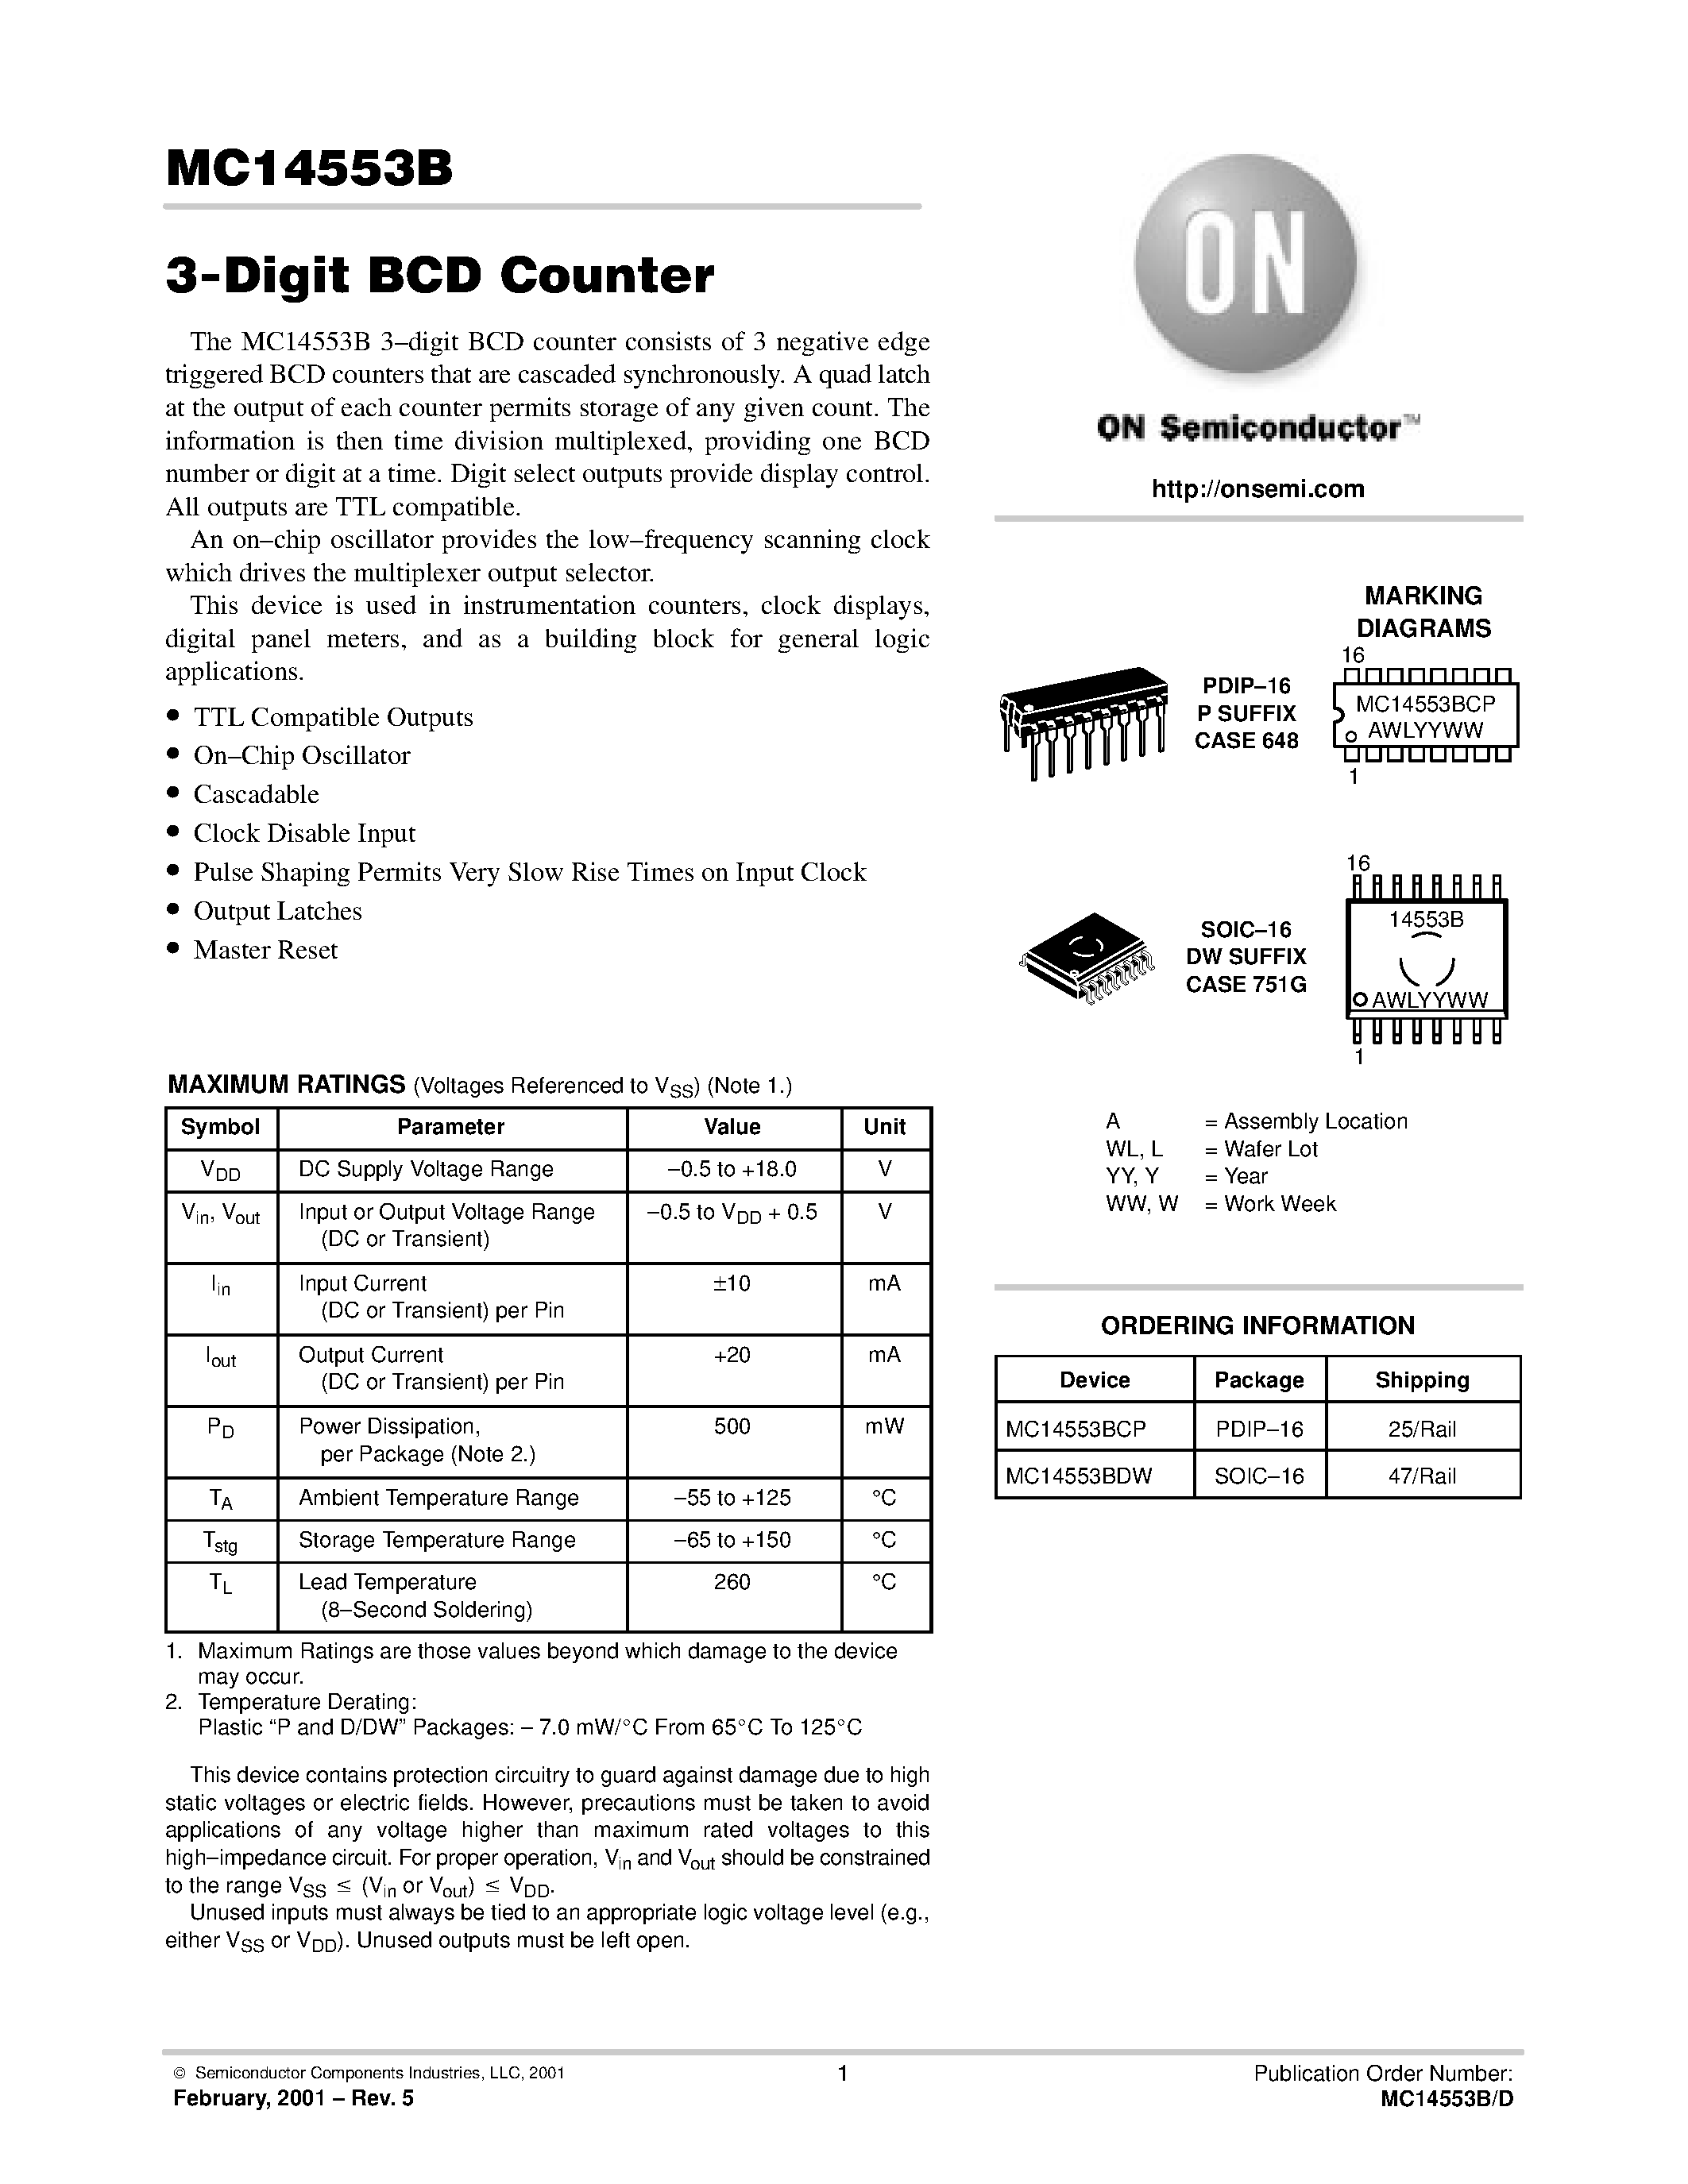 Даташит CD4553 - (MC14553B) 3 Digit BCD Counter страница 1